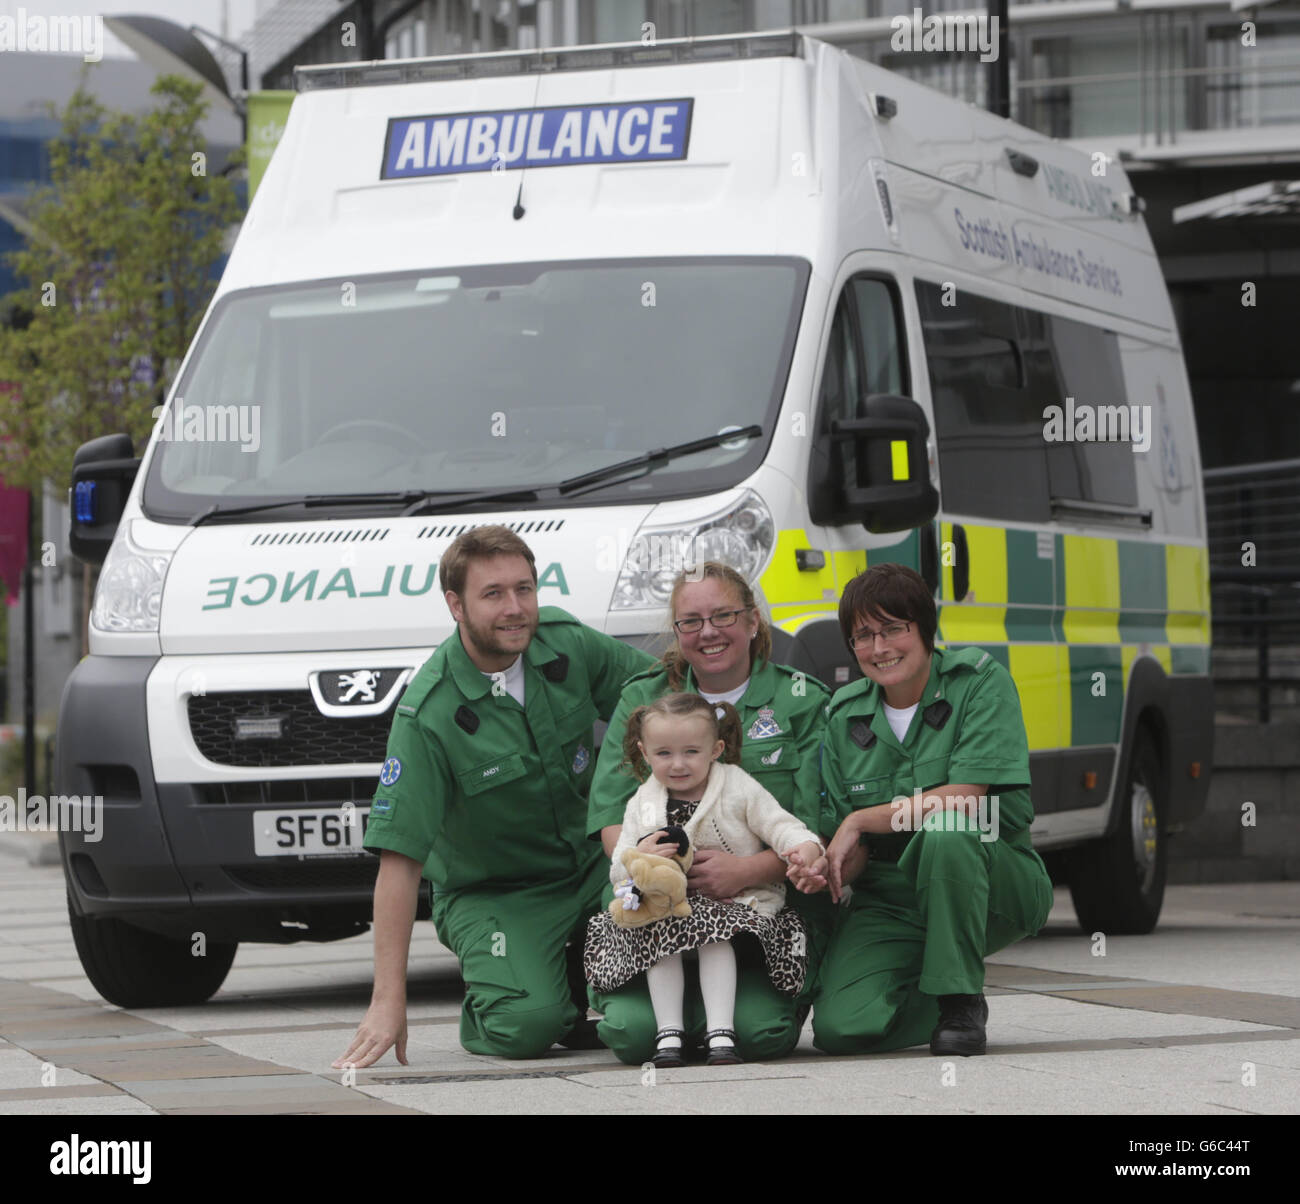 Casey McLean, trois ans, avec des ambulanciers paramédicaux de gauche à droite Andy Houston, June Maxwell et Julie Grainger, qui ont sauvé sa vie après son arrêt cardio-respiratoire à Glasgow.APPUYEZ SUR ASSOCIATION photo.Date de la photo: Jeudi 15 août 2013.Une jeune fille de trois ans a été revisitée avec des ambulanciers paramédicaux qui lui ont sauvé la vie alors que le service d'ambulance a révélé qu'il est en train de passer des appels mettant la vie en danger plus rapidement.Casey McLean, de Colston à Glasgow, a été réinsufflée par le personnel d'ambulance après son arrêt cardio-respiratoire avant d'être transportée à l'hôpital, où elle a été traitée avec succès. Banque D'Images